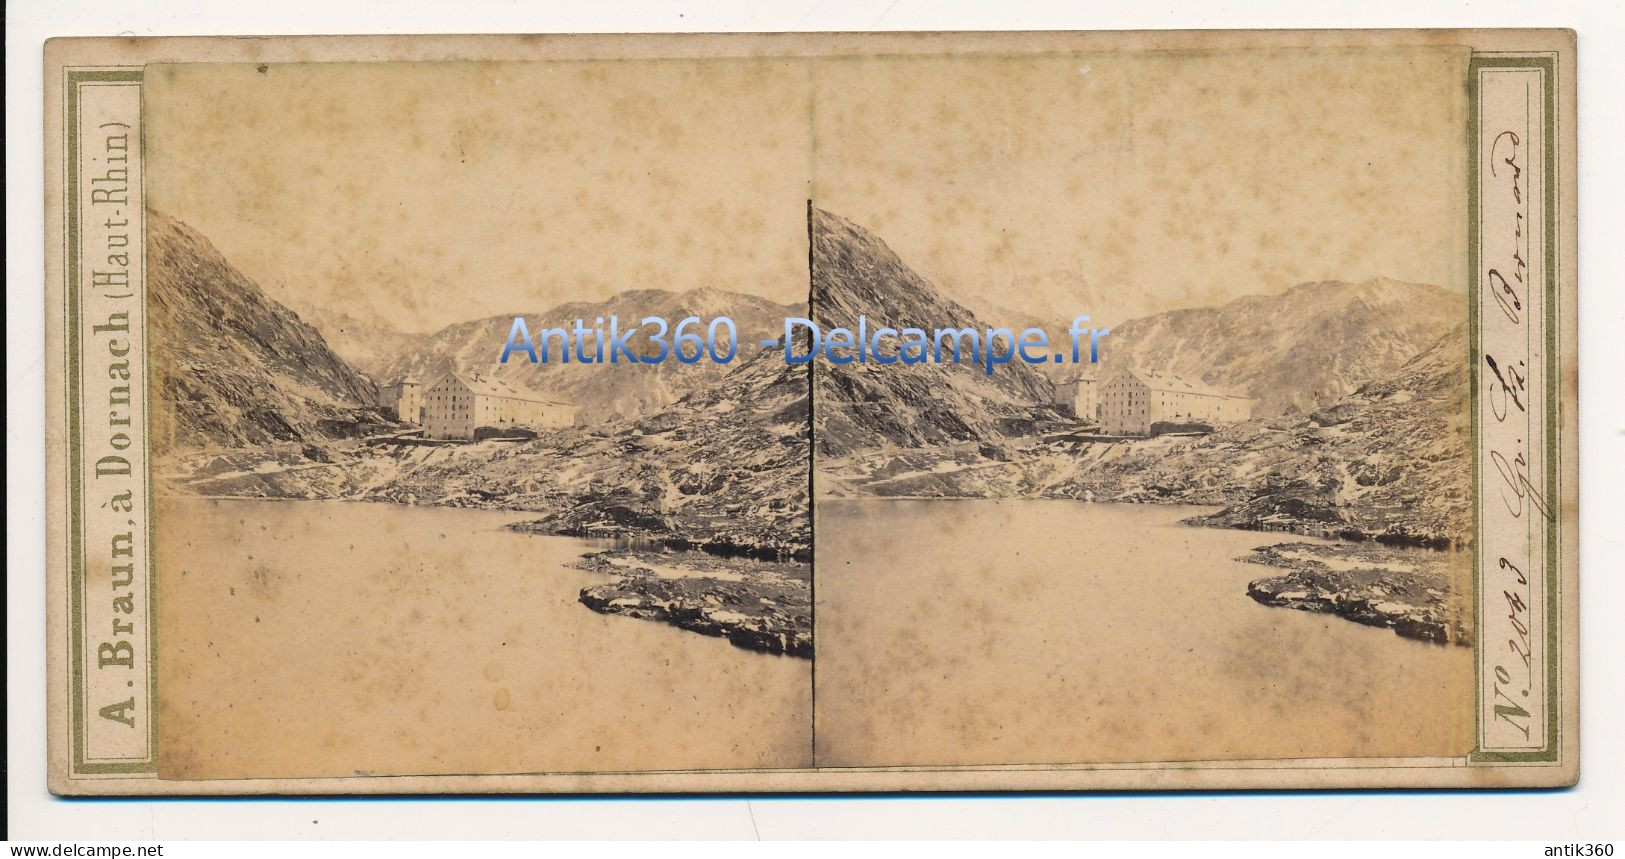 Photographie Ancienne Vue Stéréoscopique Circa 1860 Suisse Isère Vue Du Grand Saint Bernard Photographe Adolphe BRAUN - Photos Stéréoscopiques